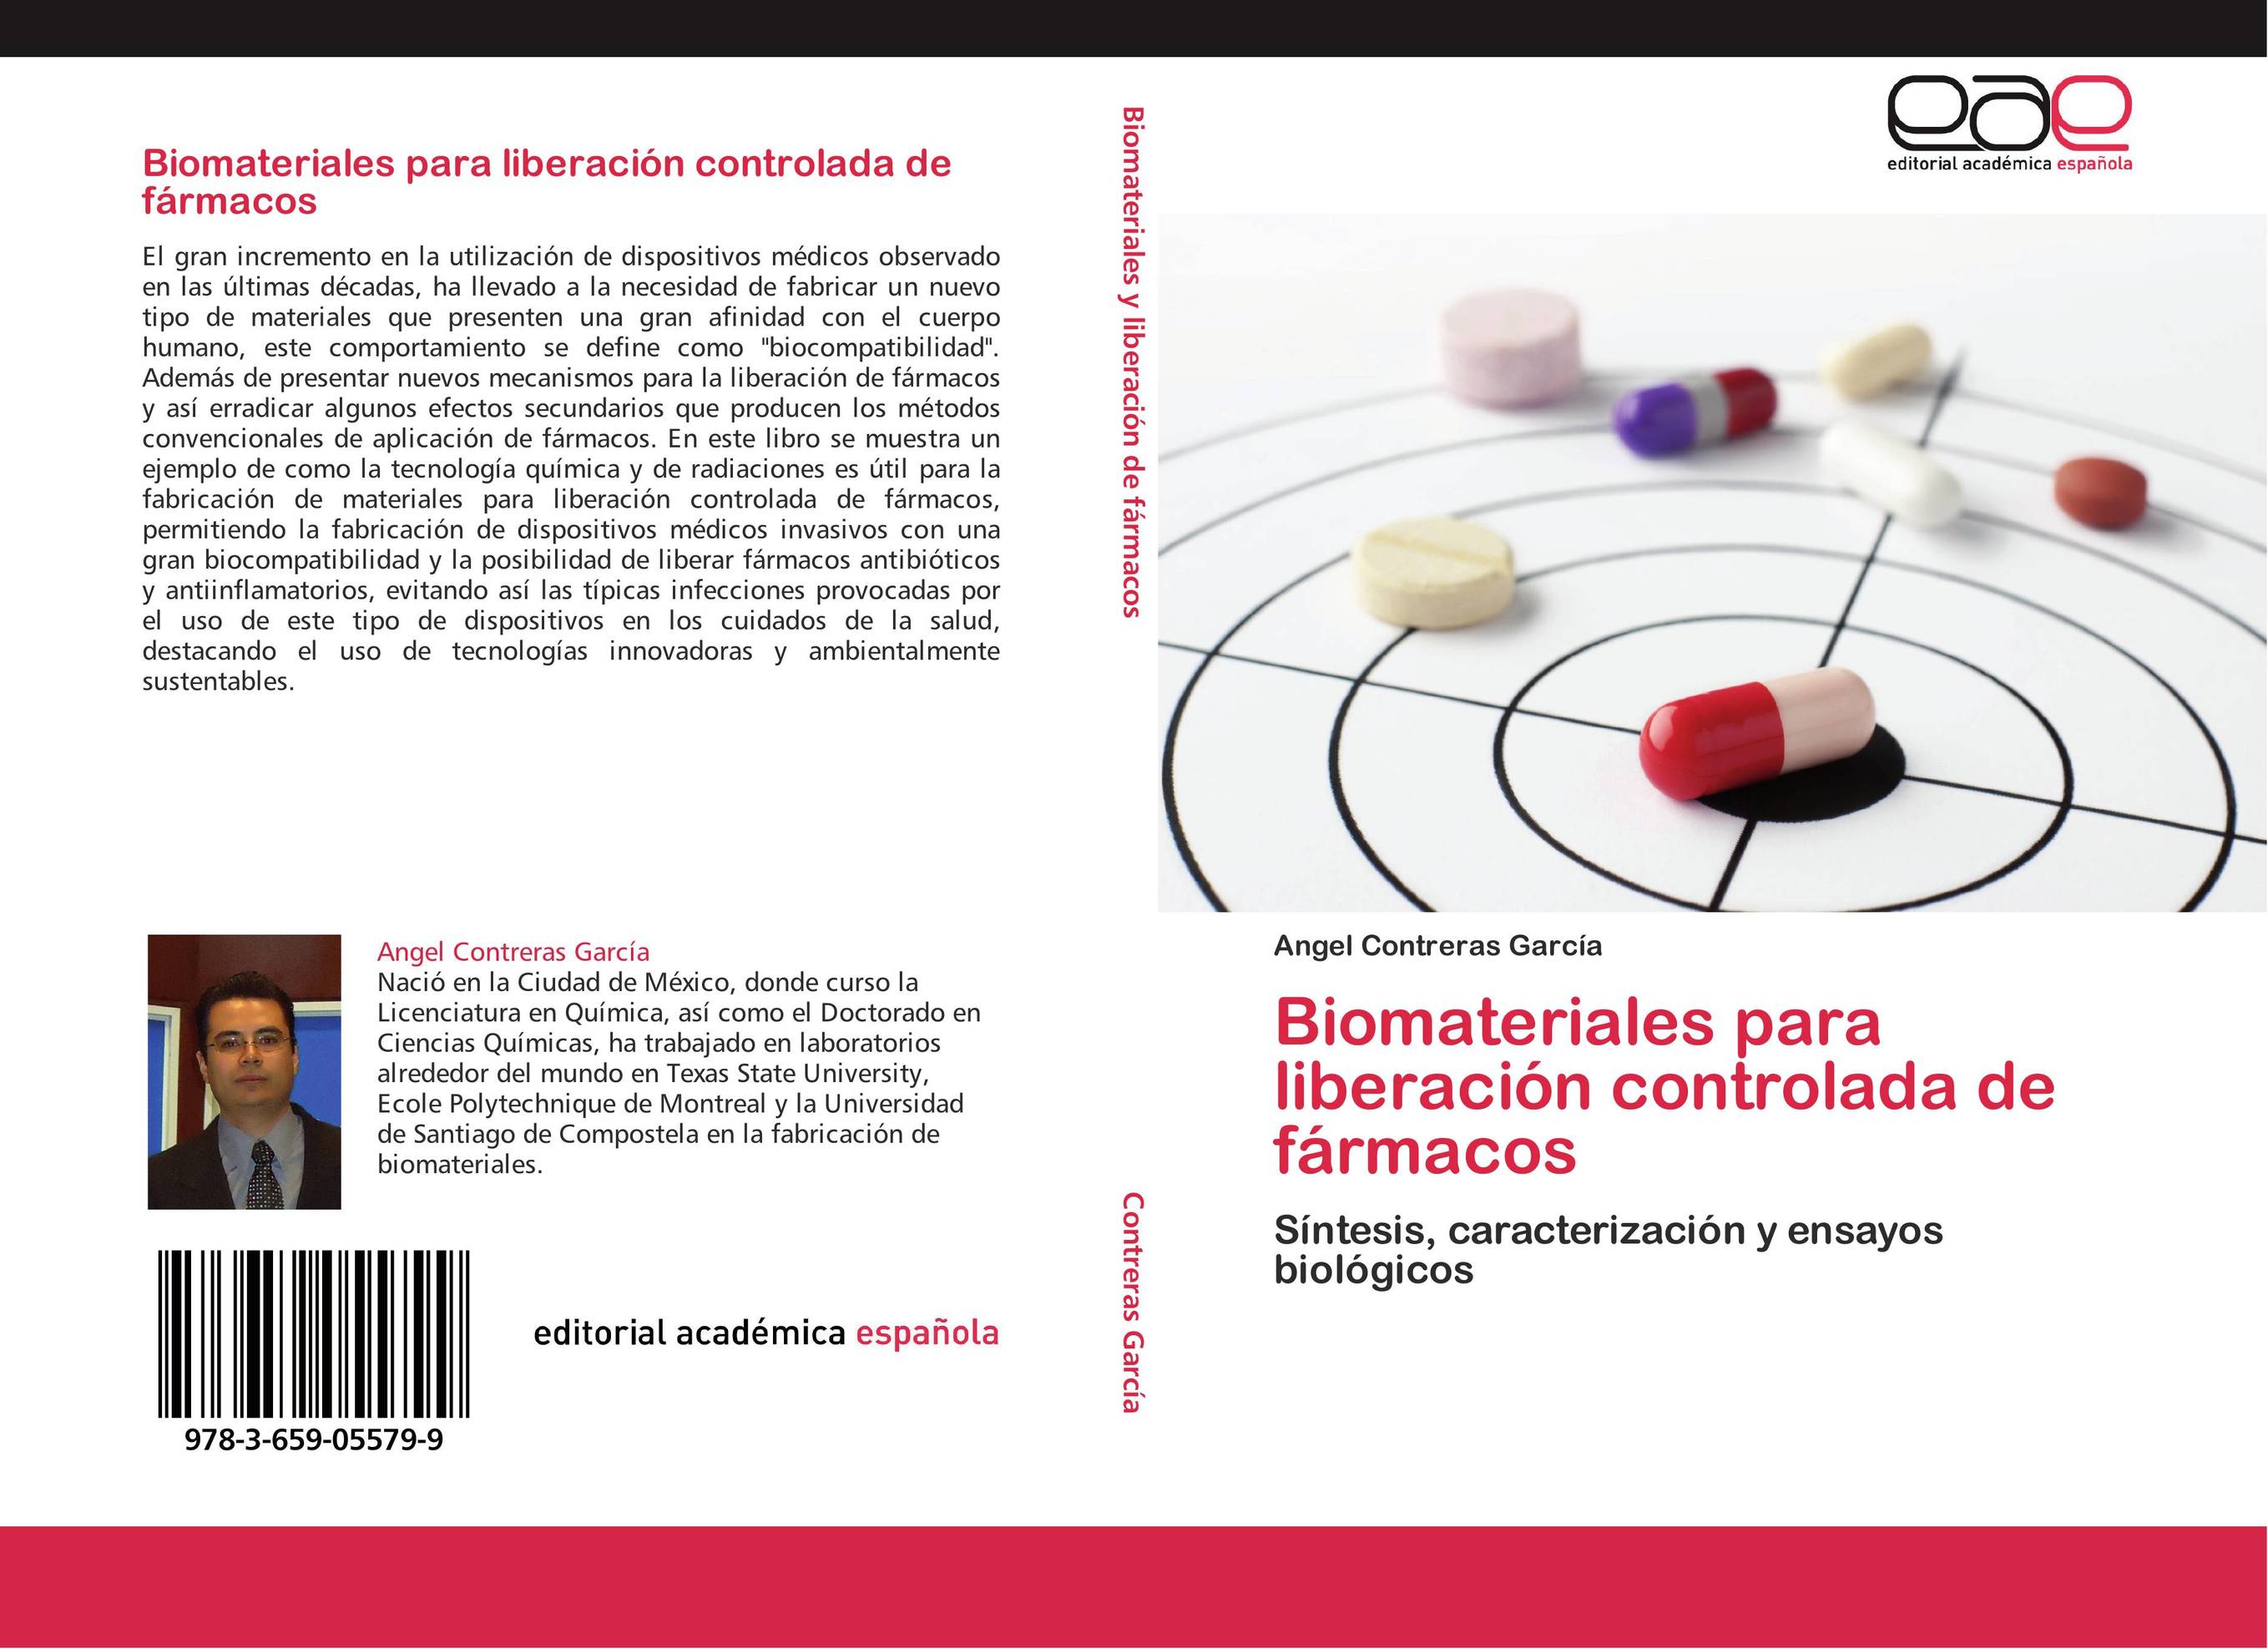 Biomateriales para liberación controlada de fármacos